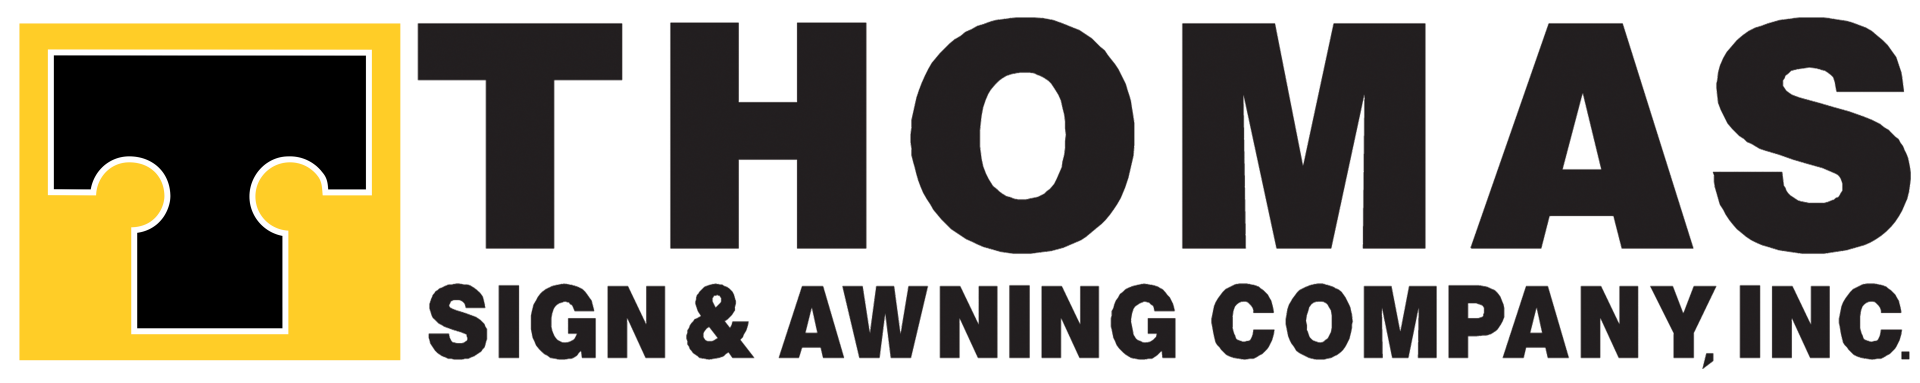 Thomas Sign & Awning Co. Inc.